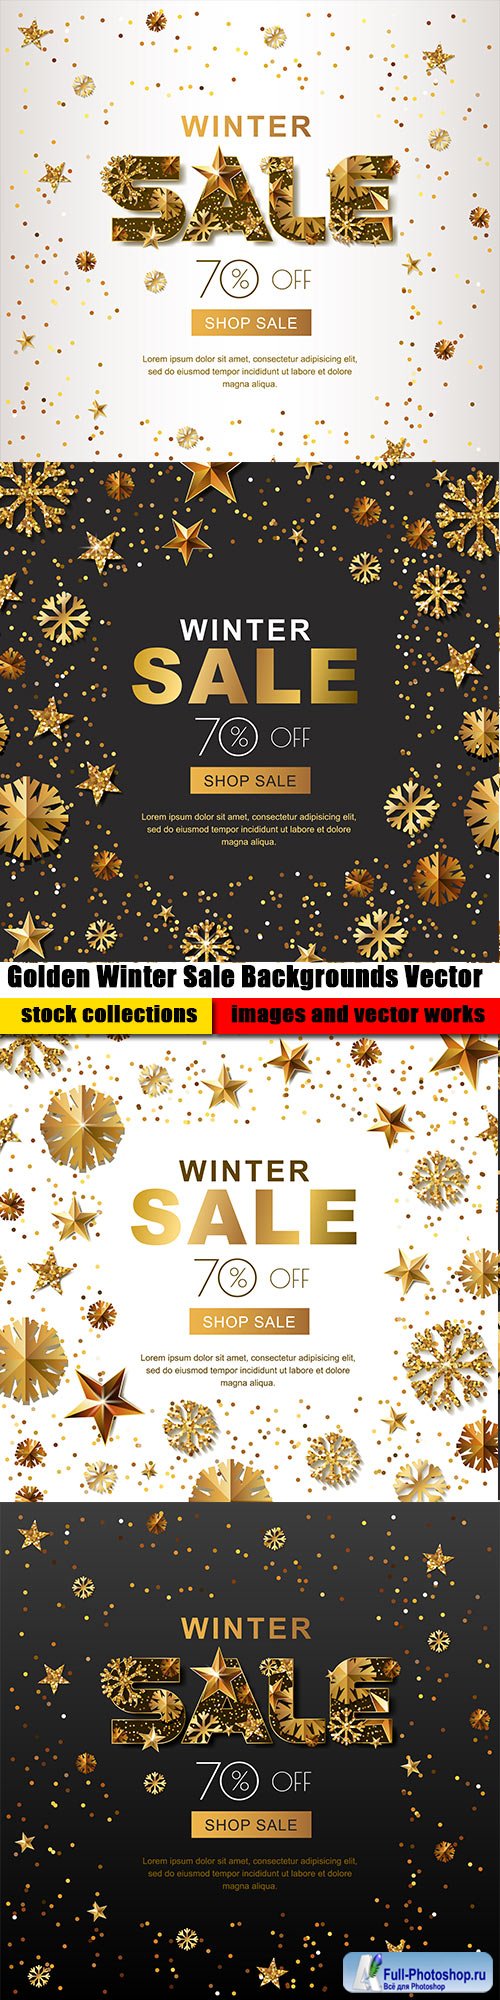 Golden Winter Sale Backgrounds Vector